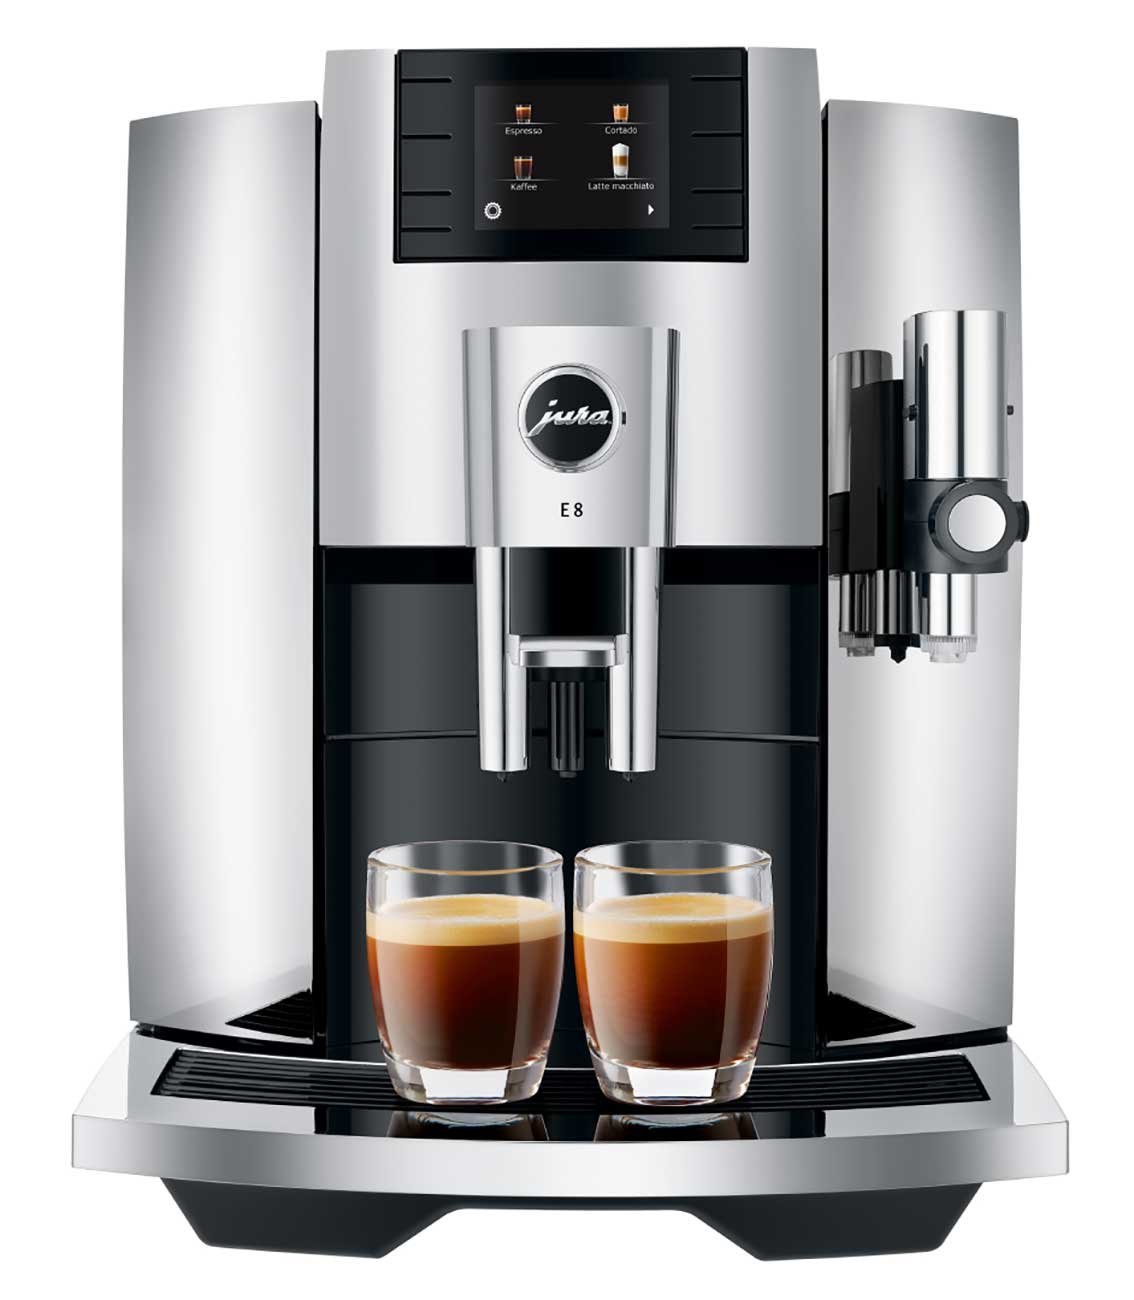 chrome finish Jura E8 espresso machine with two cups of espresso on the drip tray